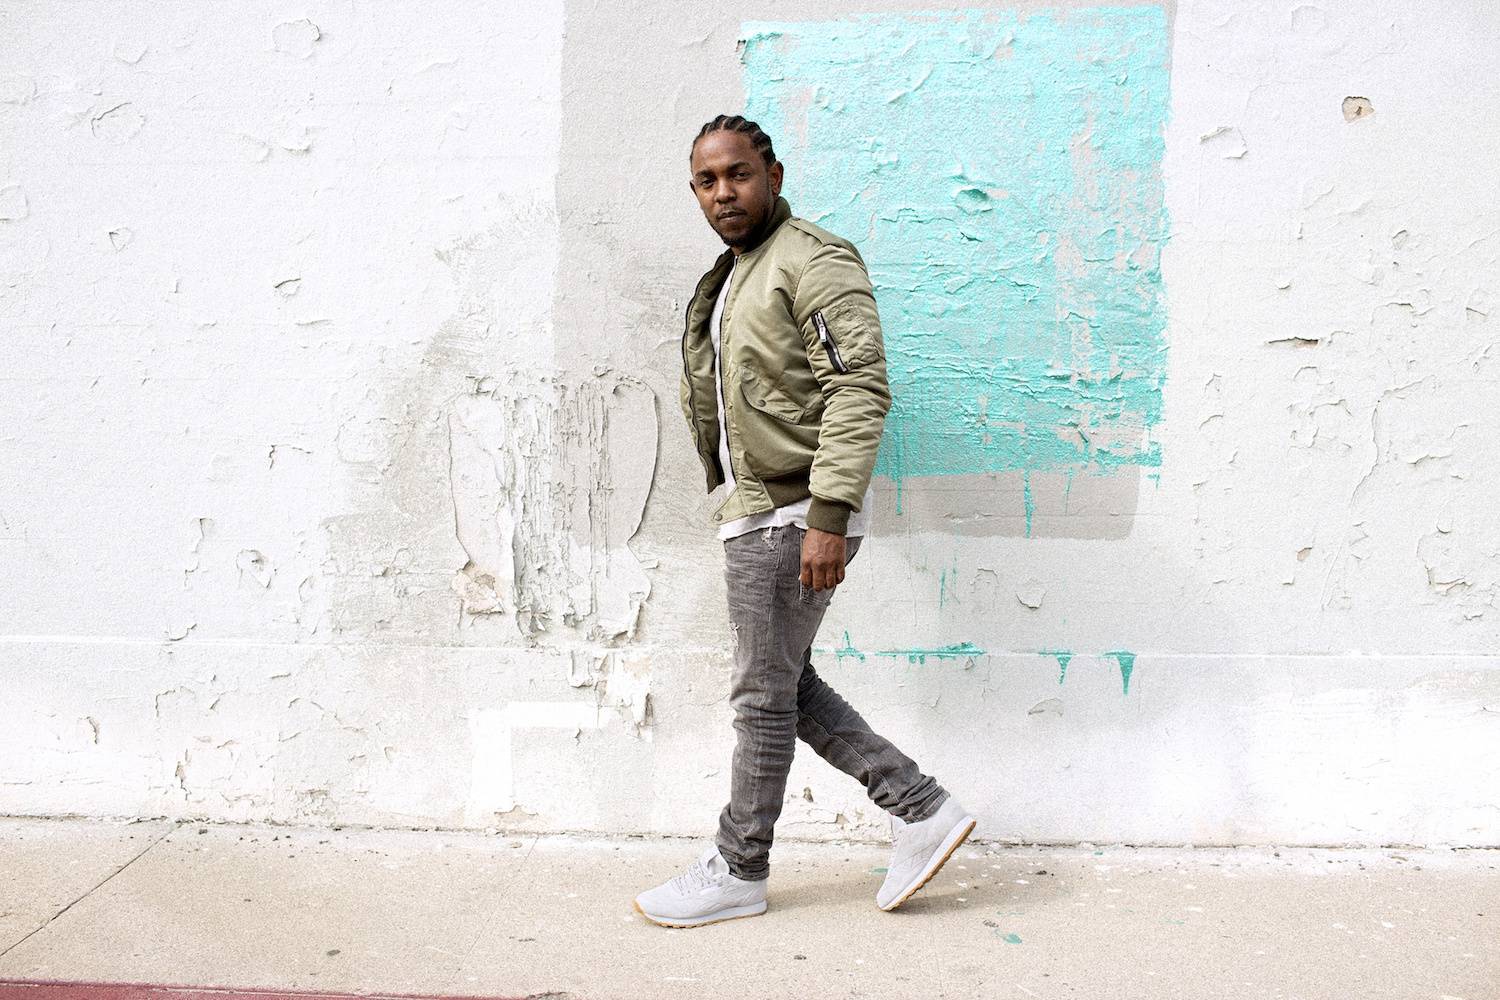 RECENZE: Rapový bůh Kendrick Lamar: Nepojmenovaná ano, ale nedotažená jeho nová deska není